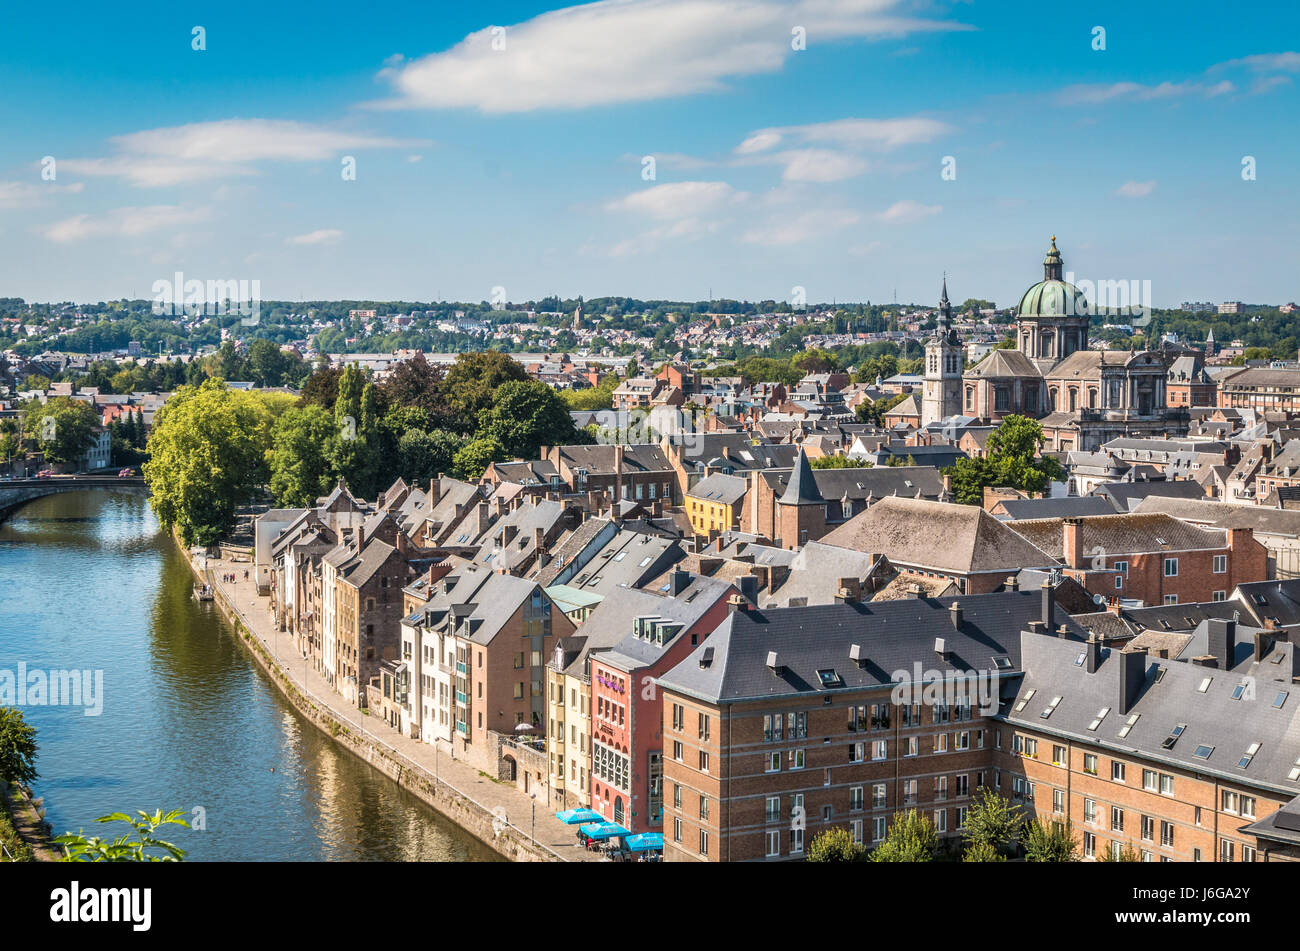 Nice view of Namur Belgium Stock Photo